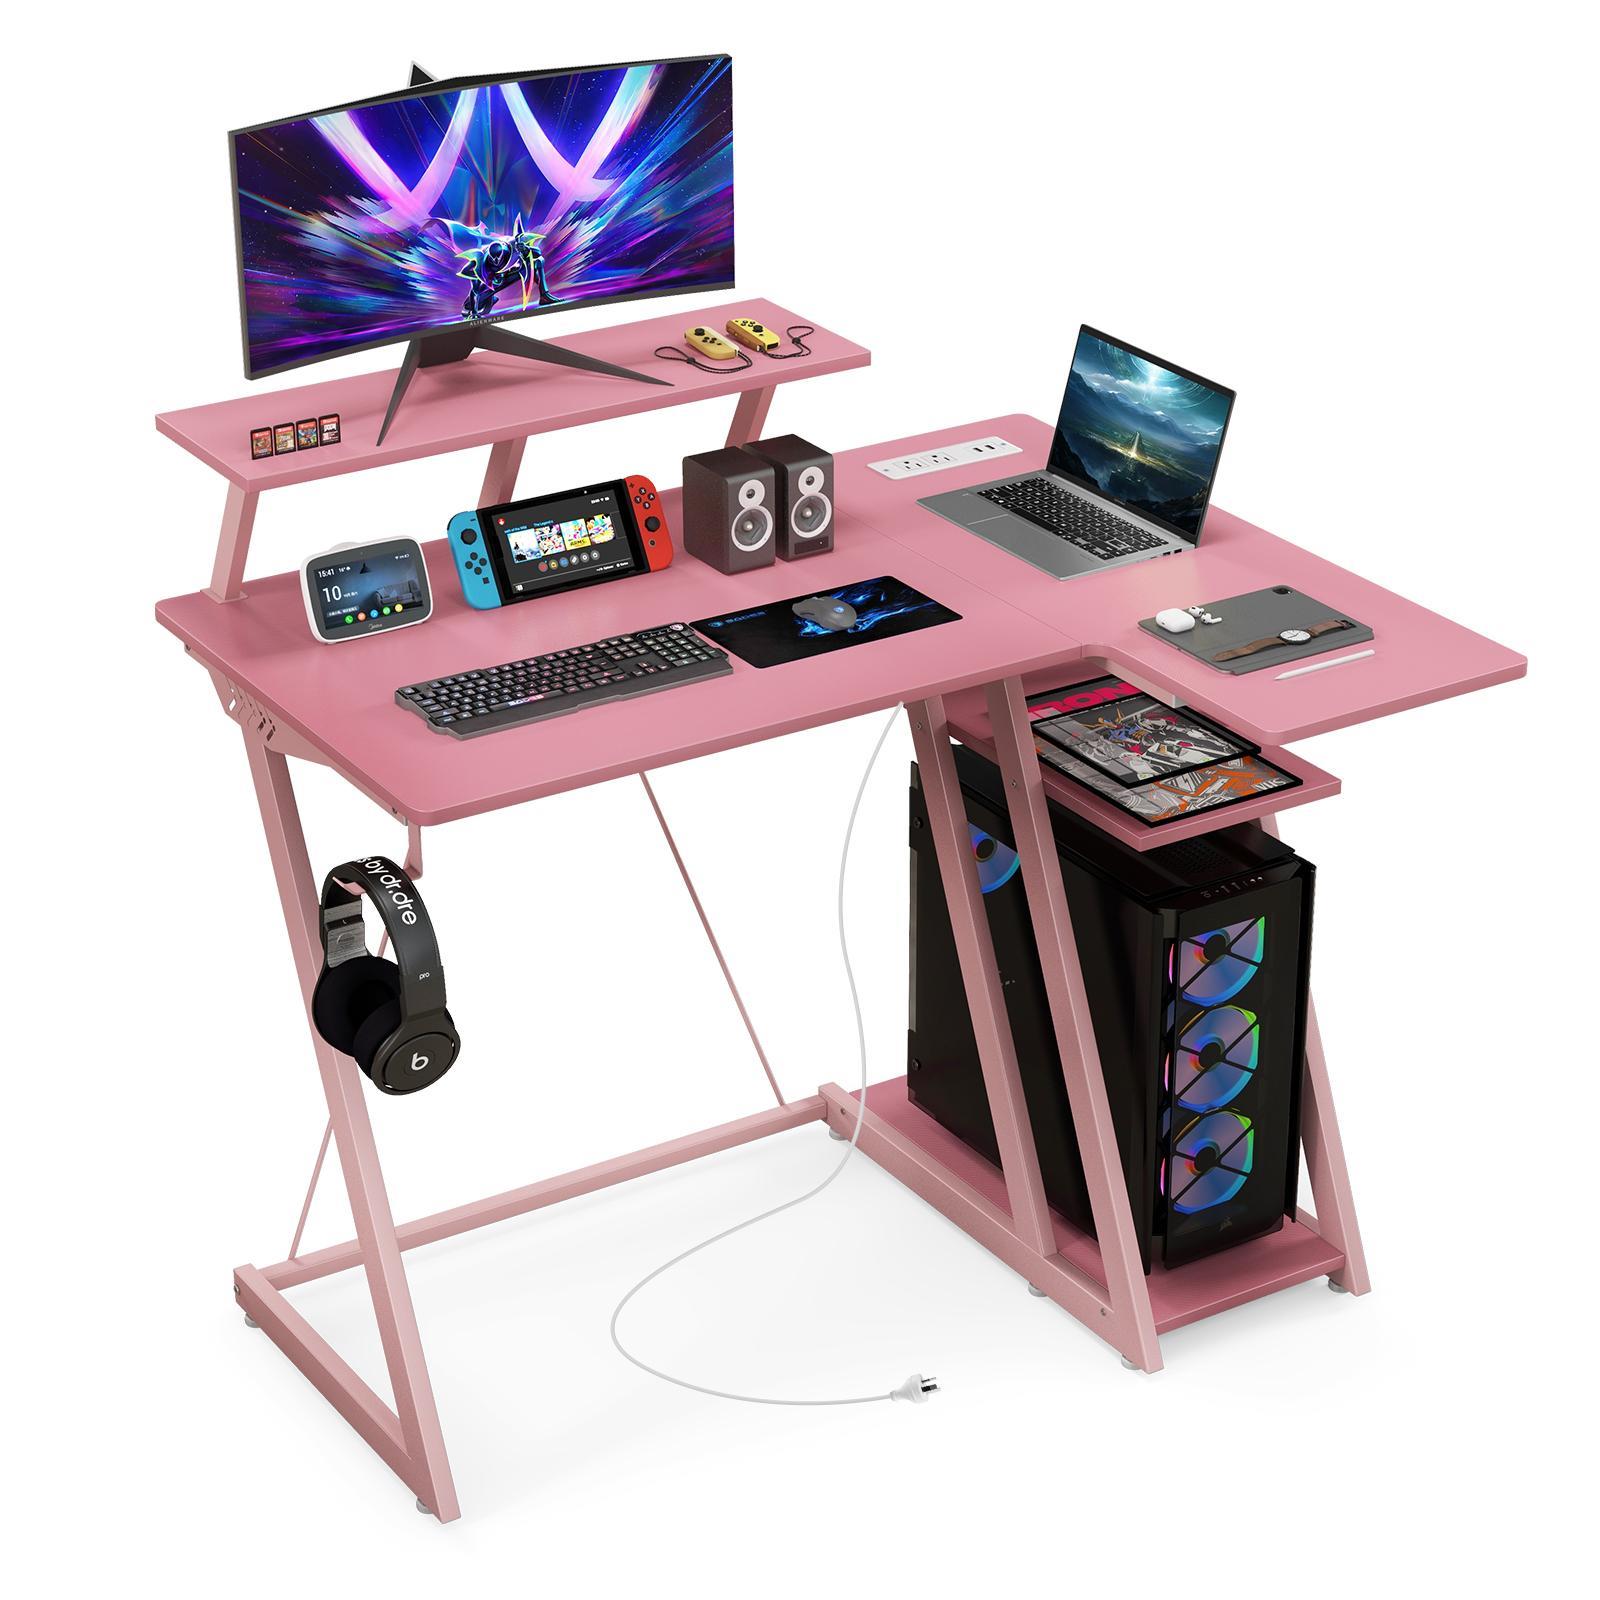 Giantex L Shaped Gaming Desk 2-tier Computer Desk w/Outlets & USB Ports Corner Home Office Desk Pink